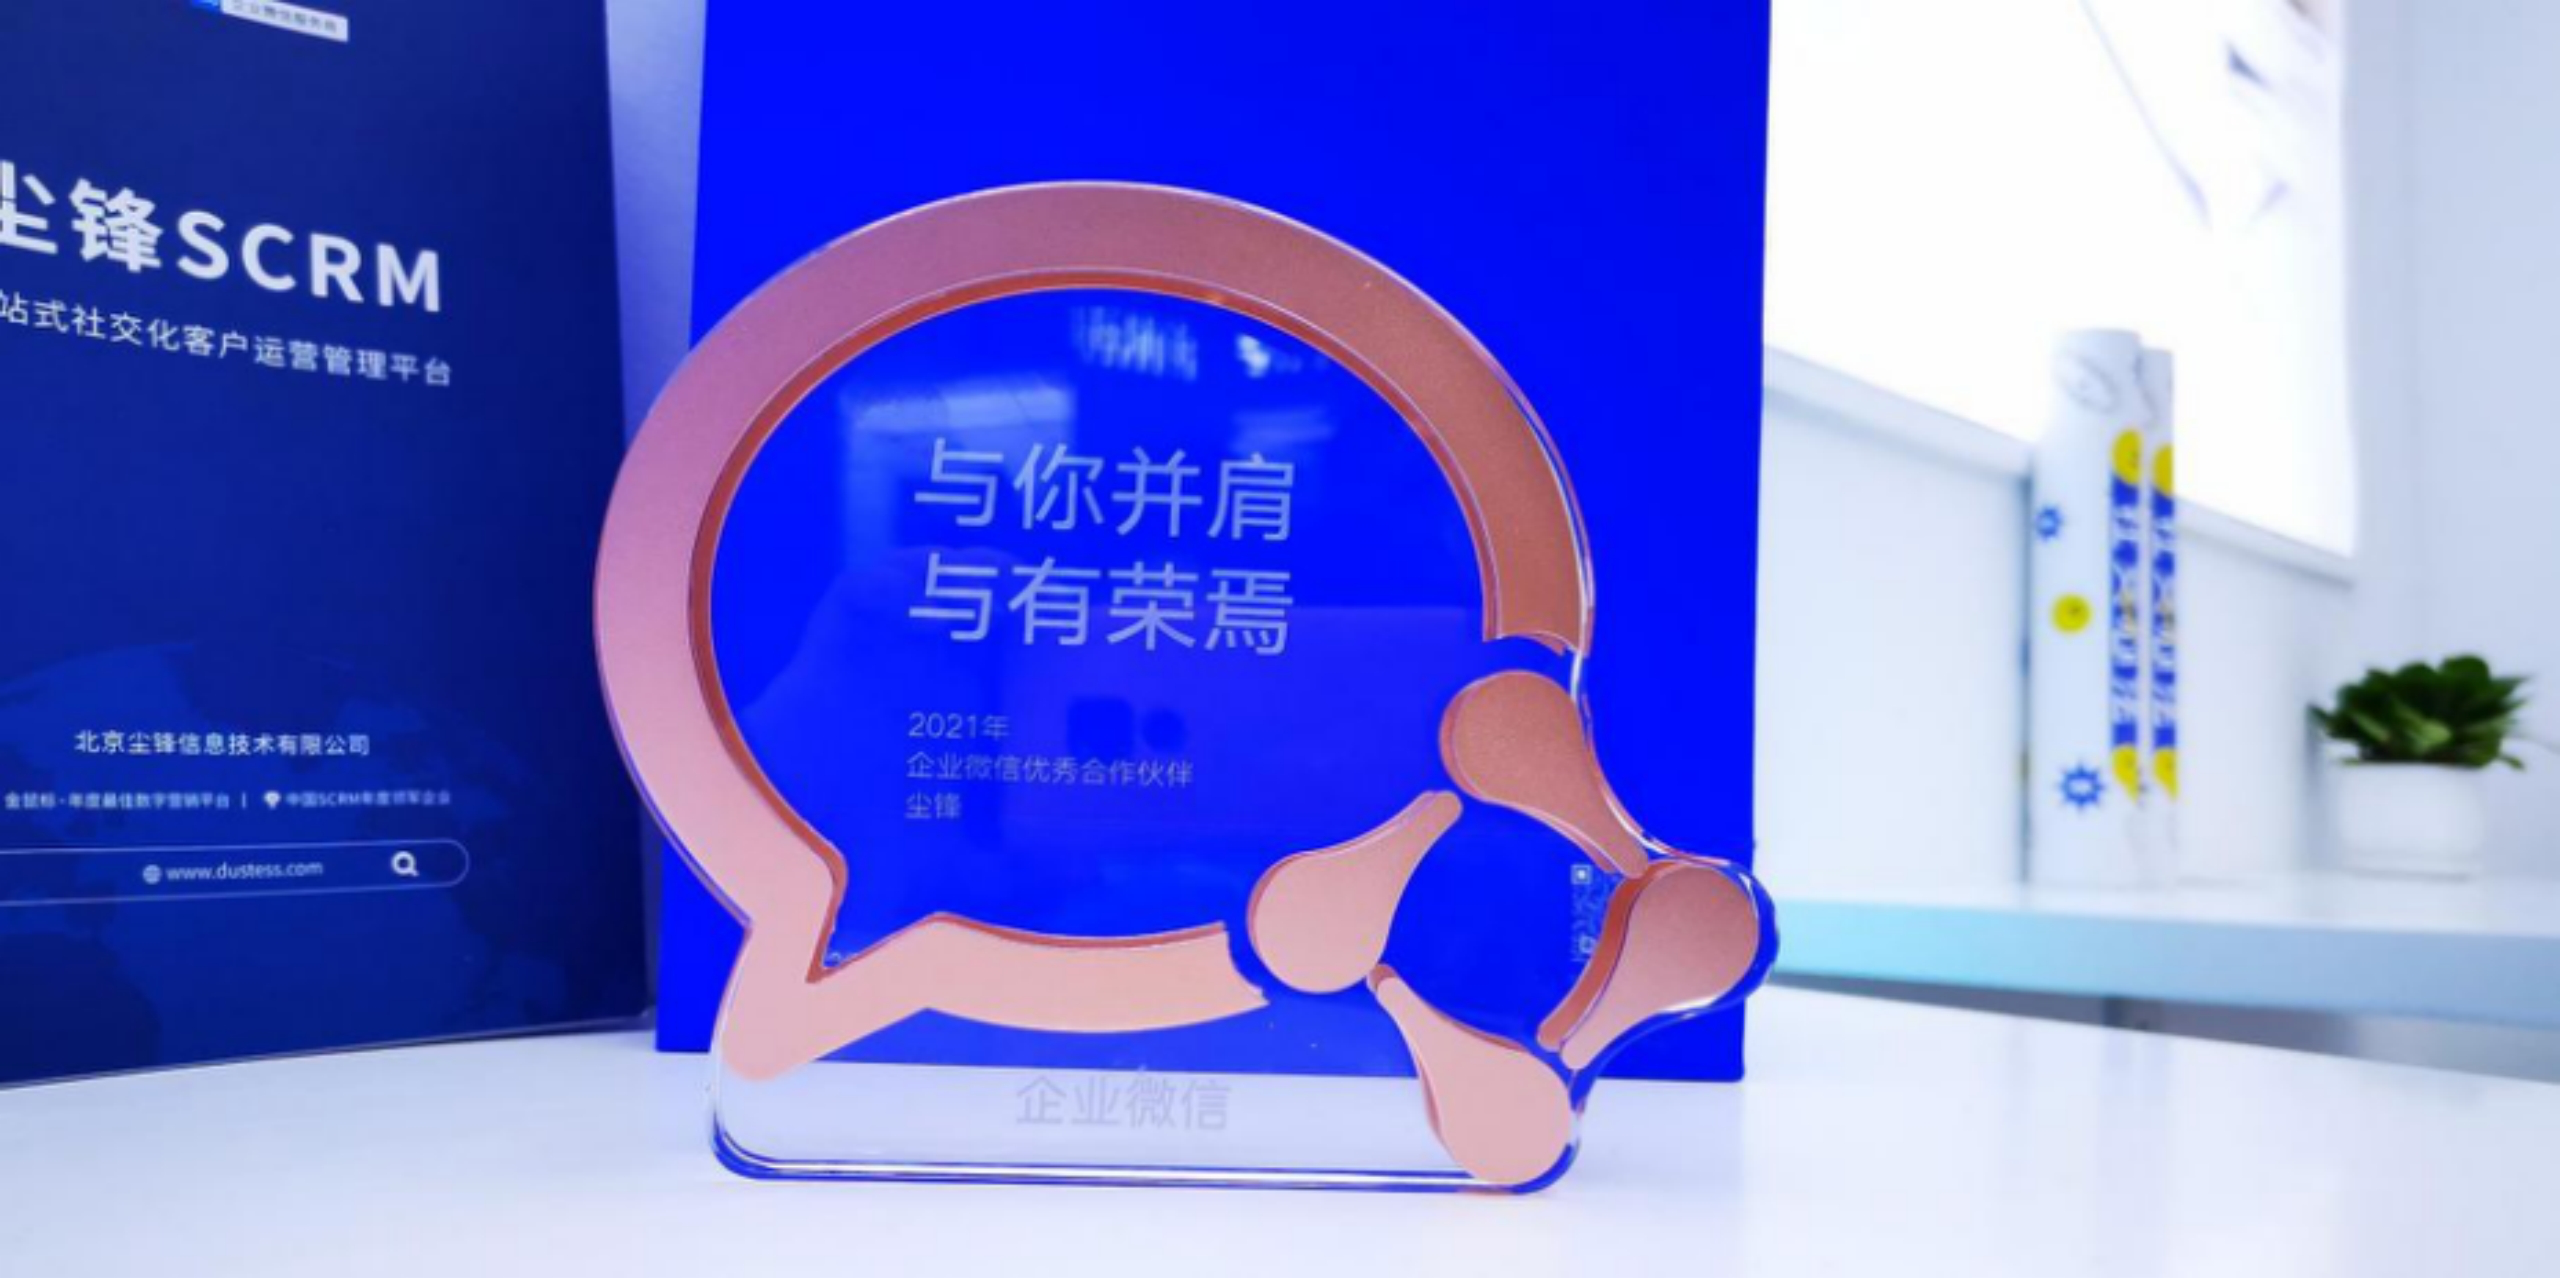 尘锋行稳致远<h2>北京一分赛车杀一码网址</h2>，获2021年企业微信优秀合作伙伴奖项